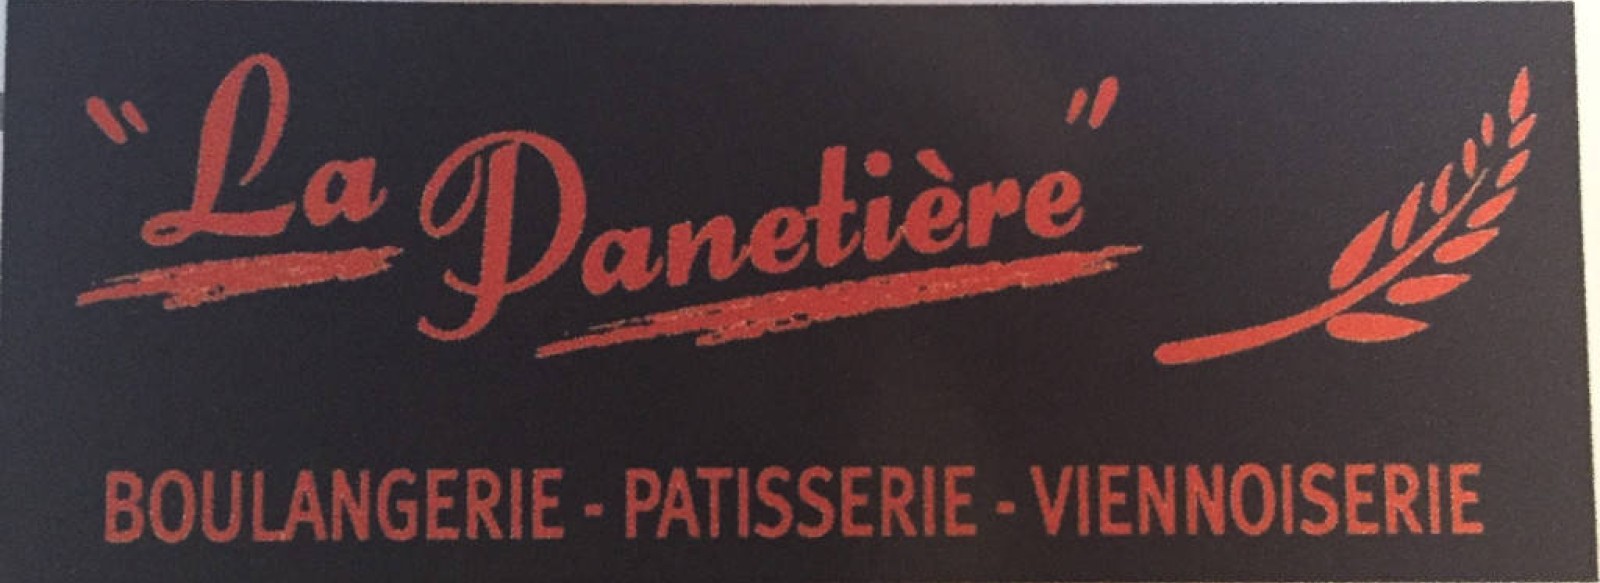 Boulangerie La Panetiere